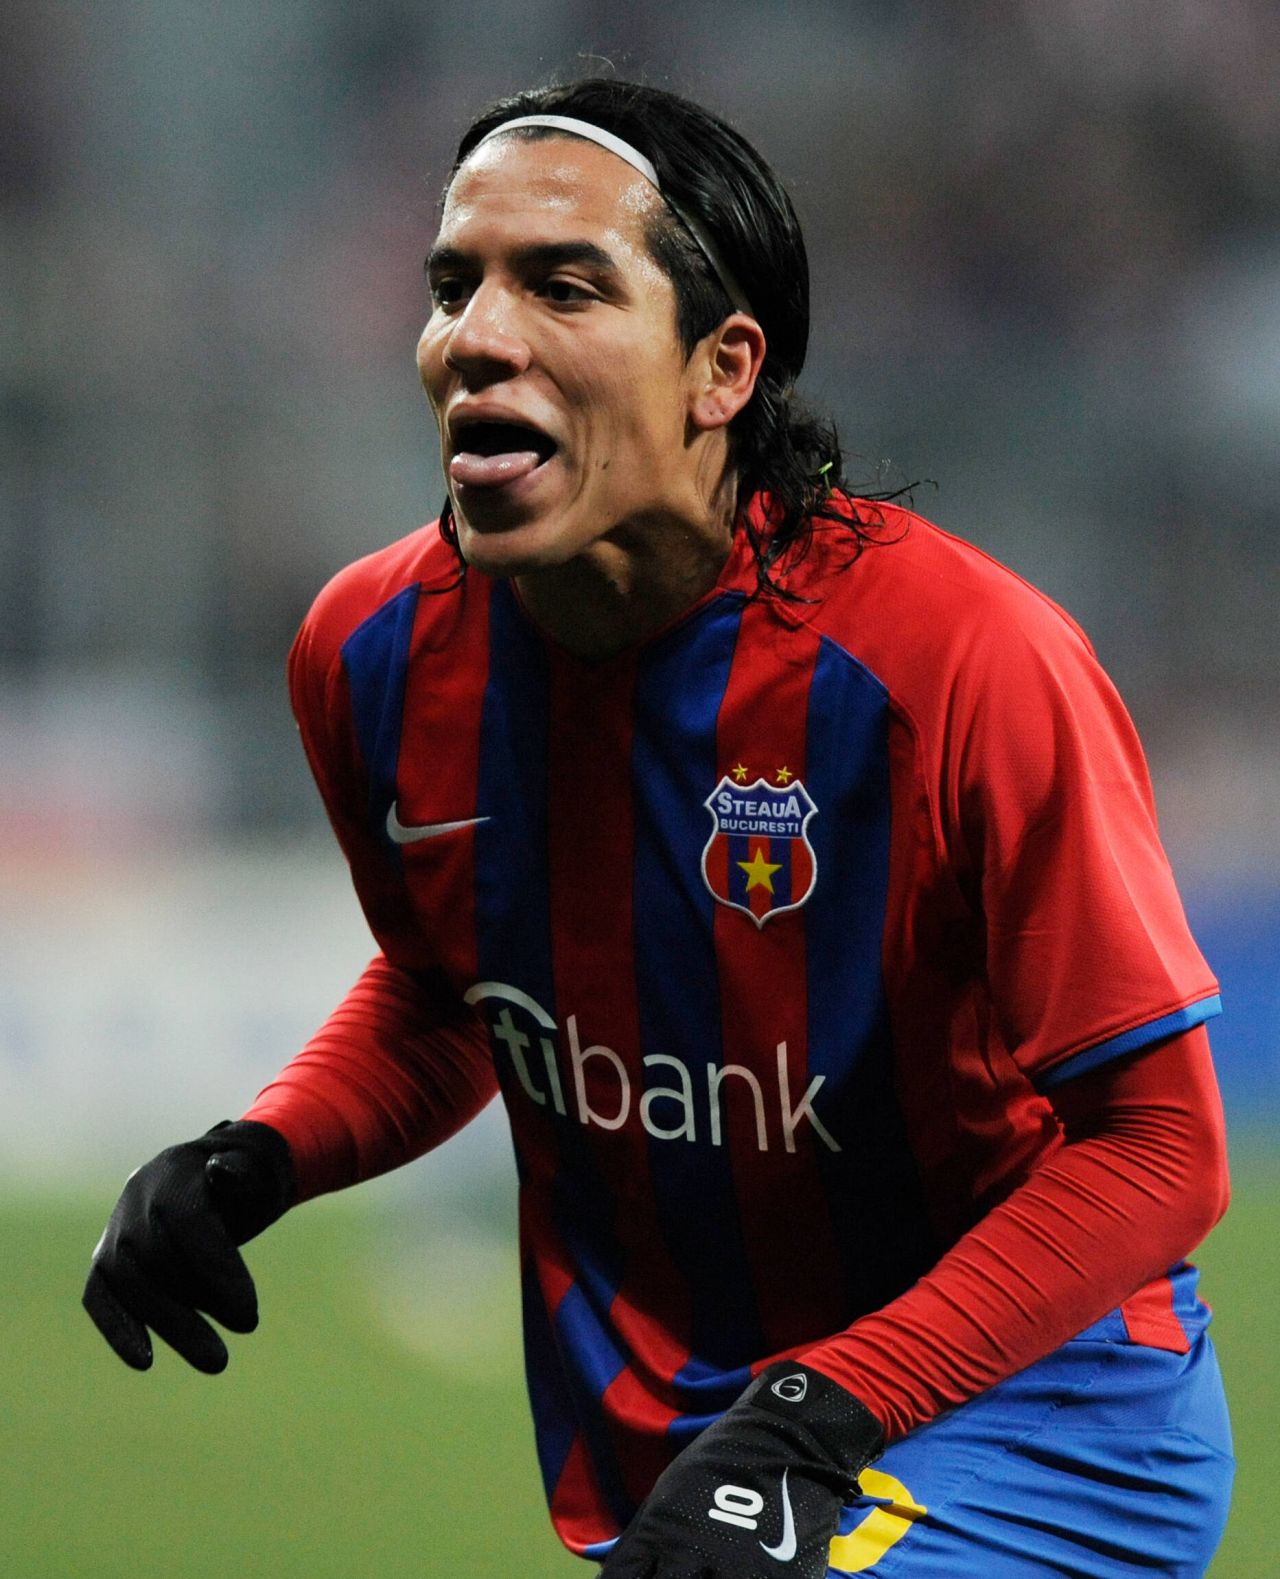 Dayro Moreno a devenit golgheterul numărul 1 din istoria Columbiei! Foarfecă senzațională pentru fostul vârf de la Steaua numit acum ”San Dayro” și ”LegenDayro”_44